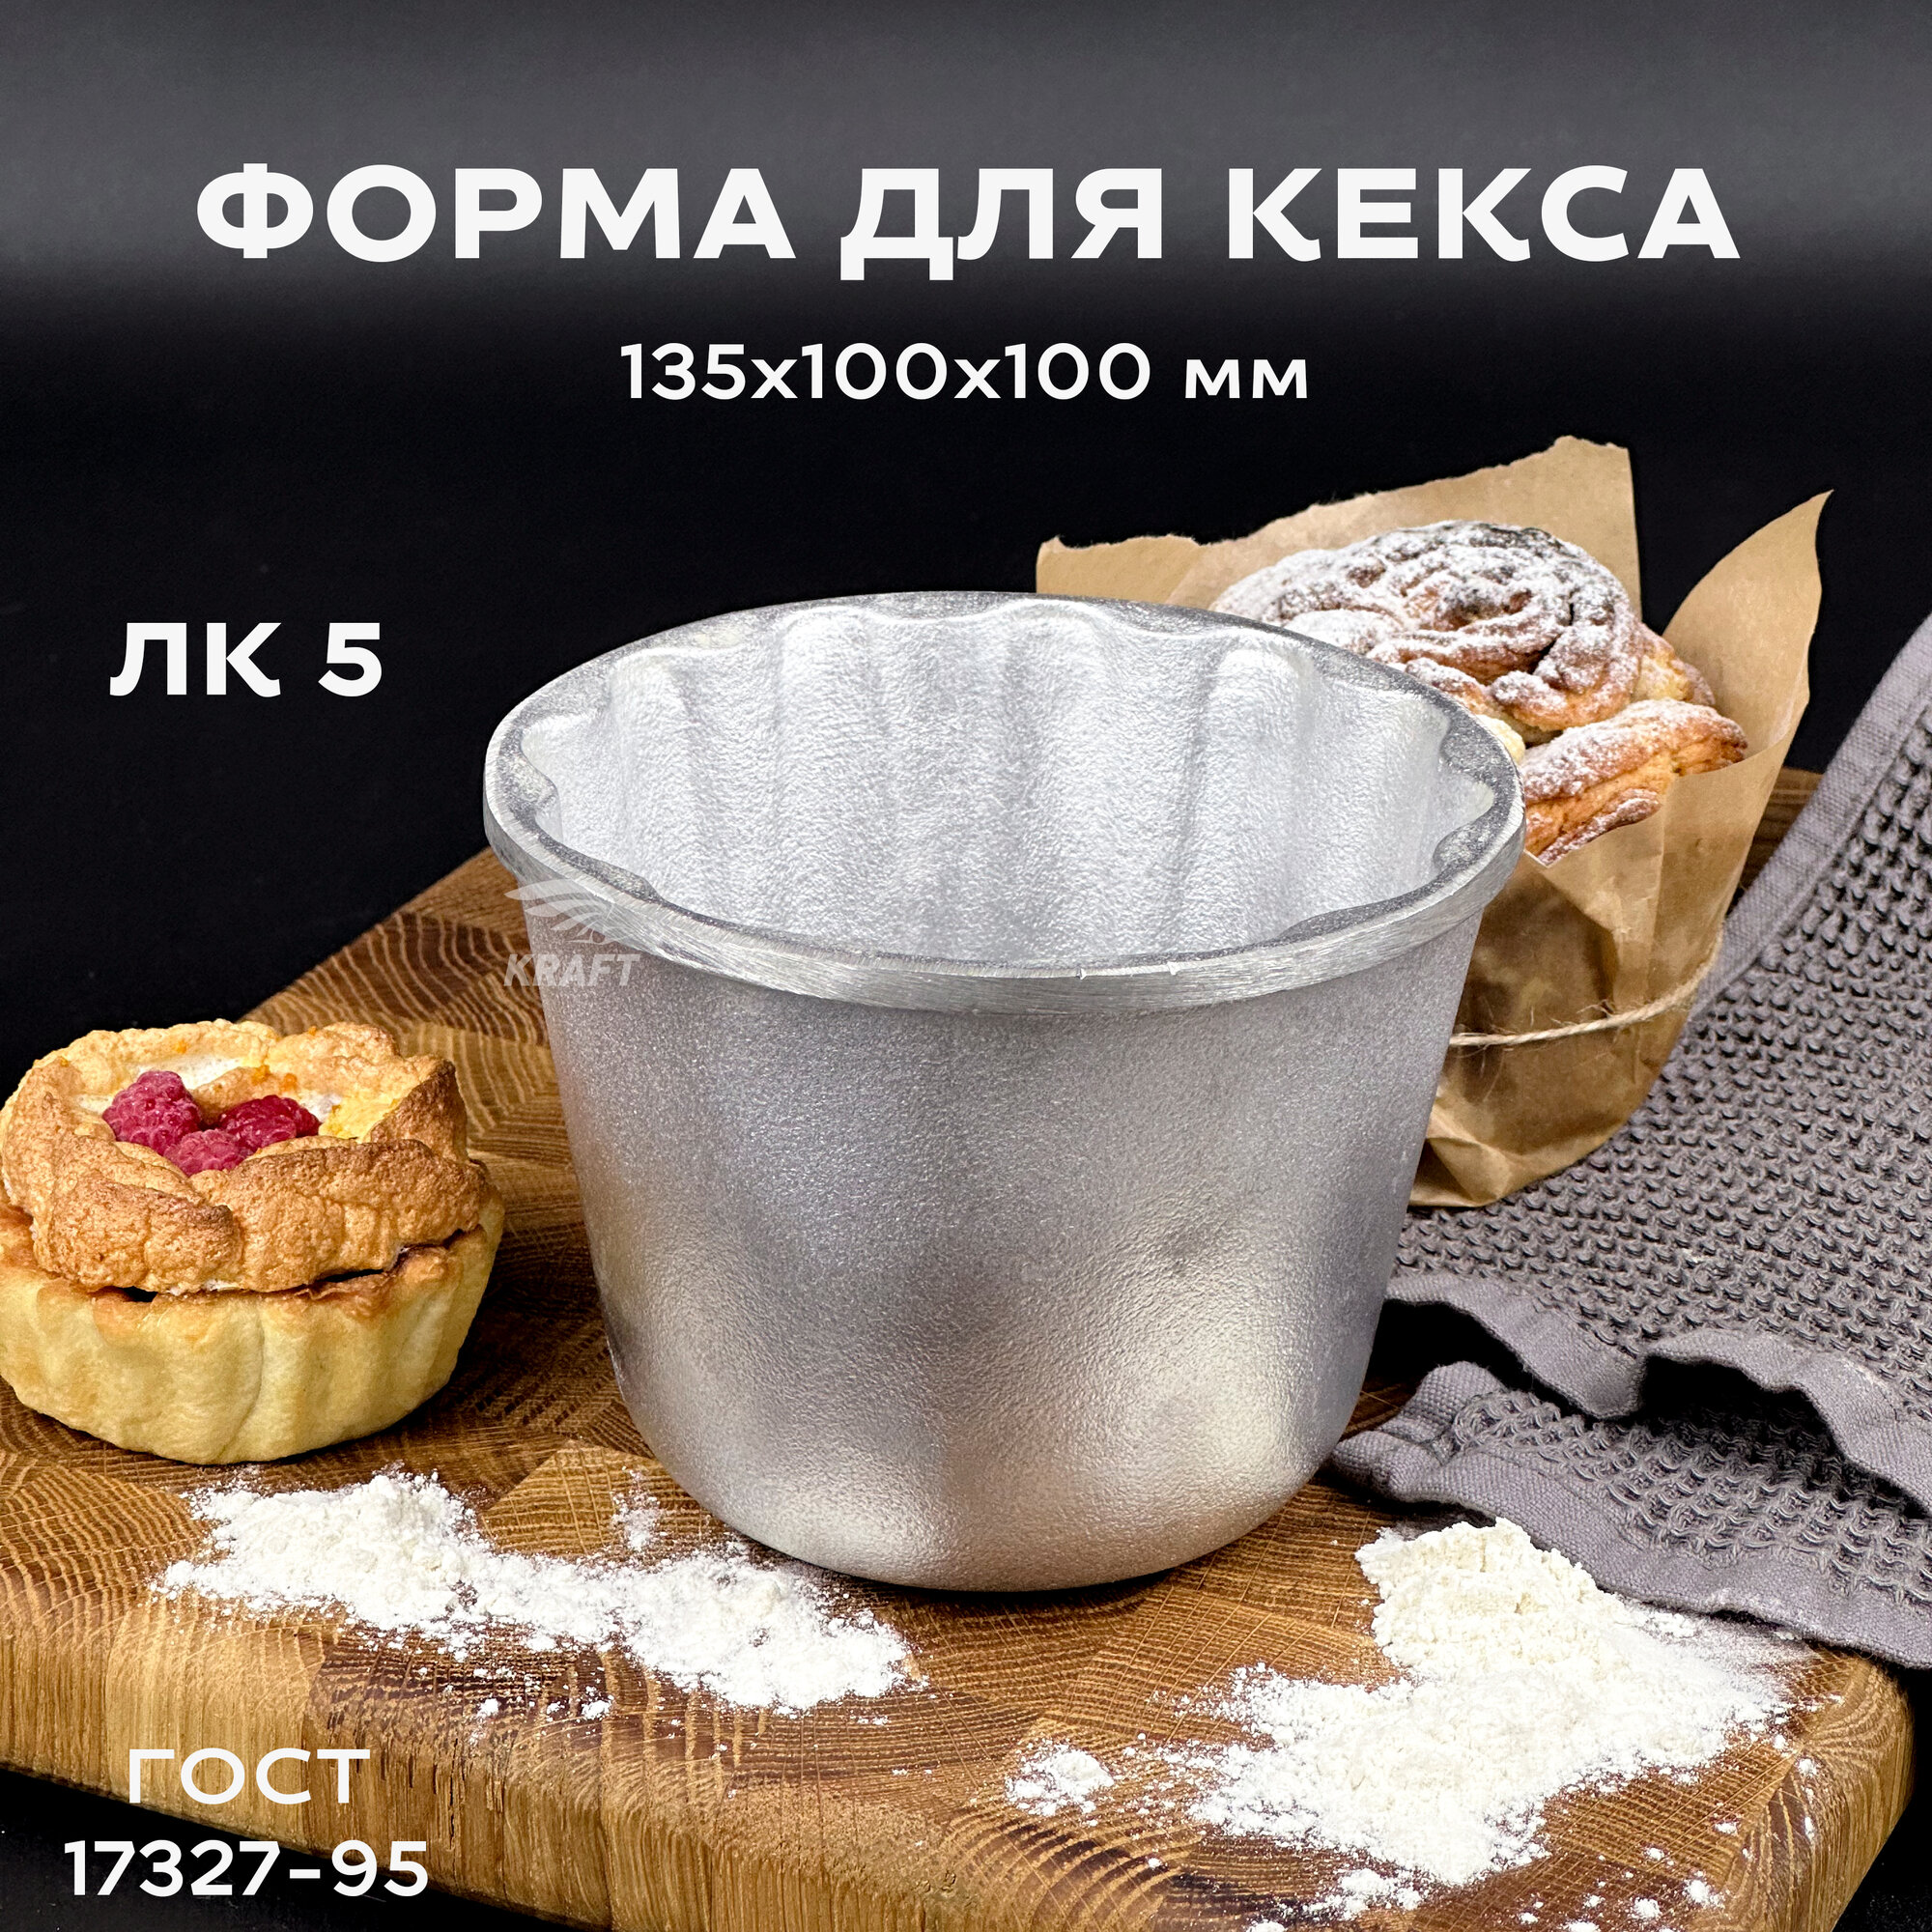 Форма для кекса хлебопекарная из алюминия многоразовая ЛК 5 ГОСТ 17327-95